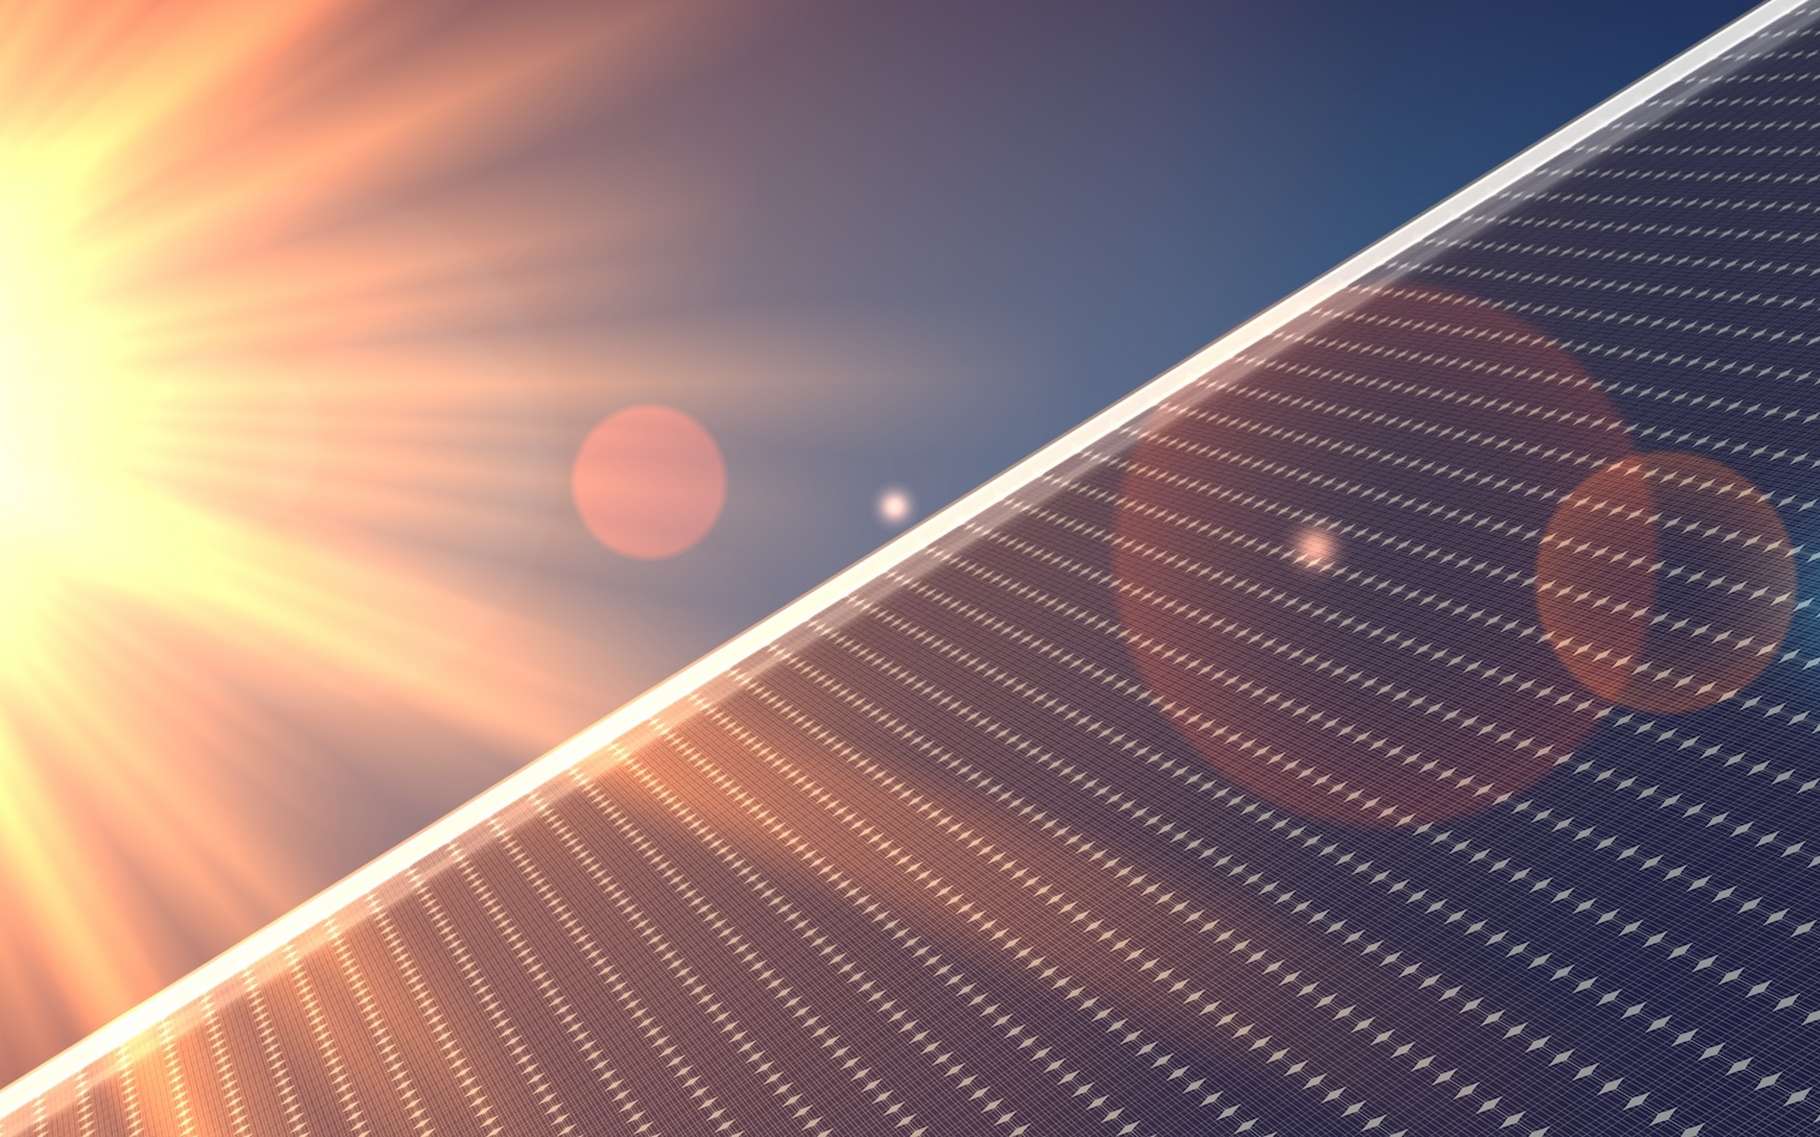 Des chercheurs australiens soulignent l’importance de rendre plus durable la production d’aluminium alors que la demande devrait exploser du fait de la forte croissance annoncée du marché du solaire photovoltaïque. © vegefox.com, Adobe Stock